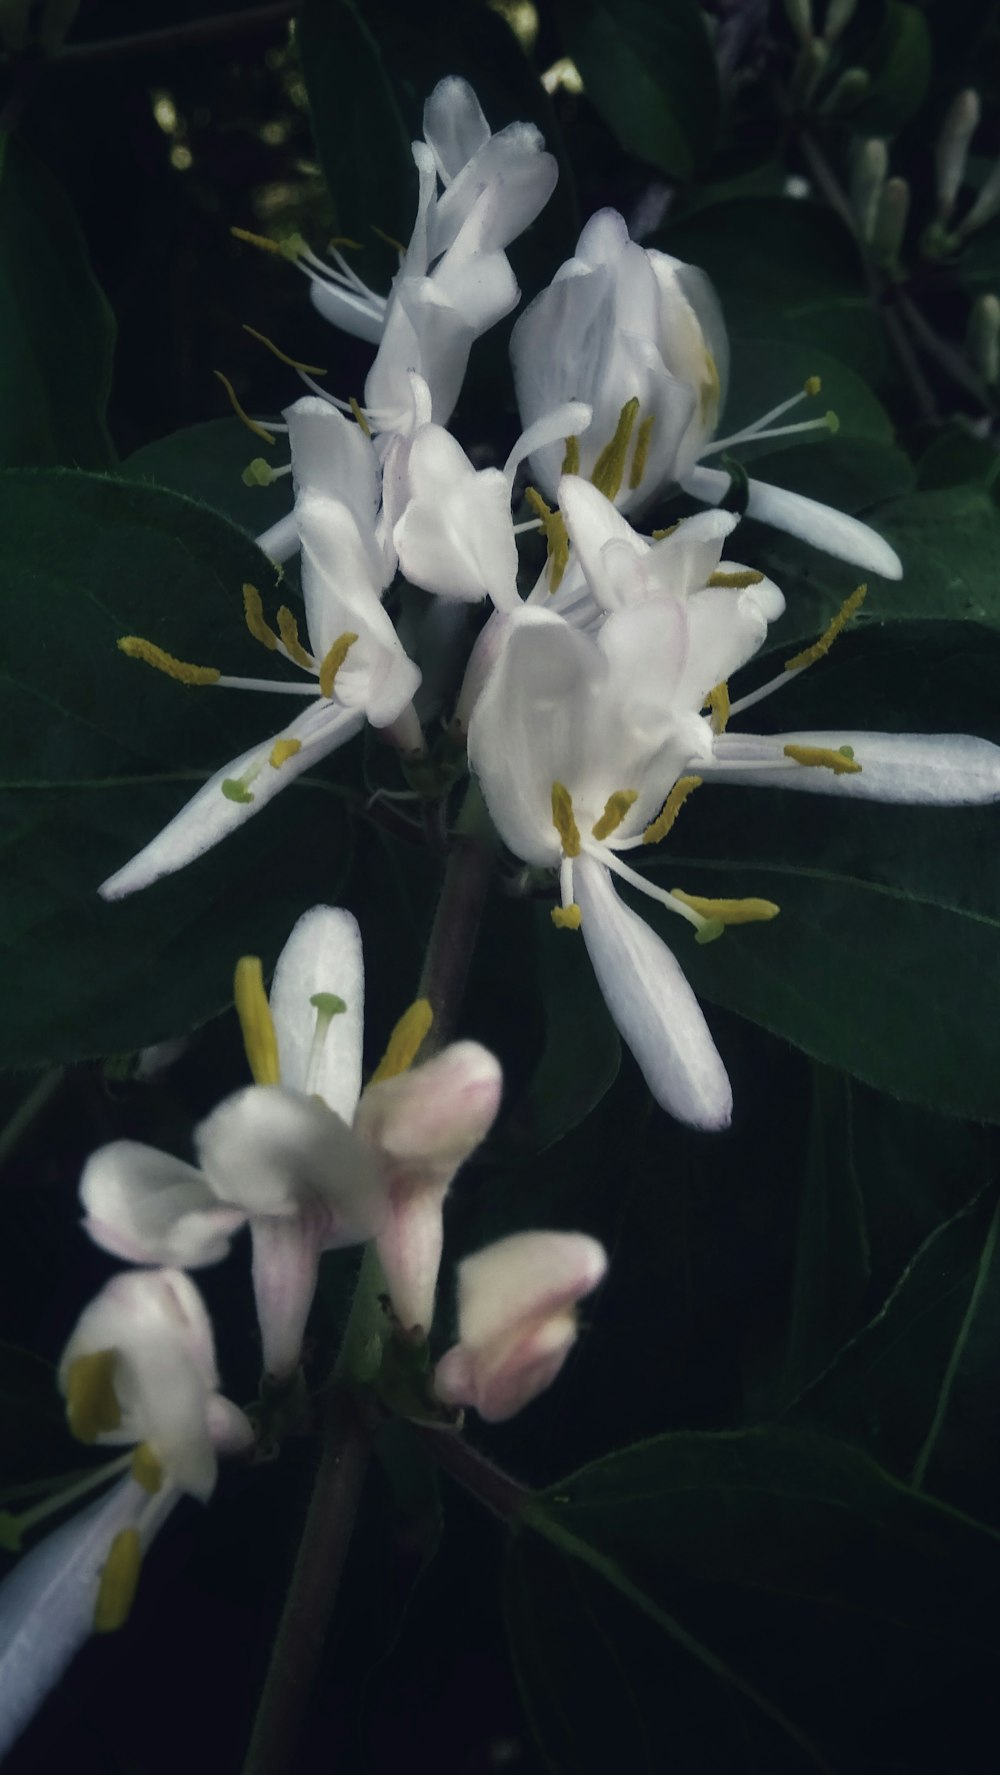 緑の葉を持つ白い花の束